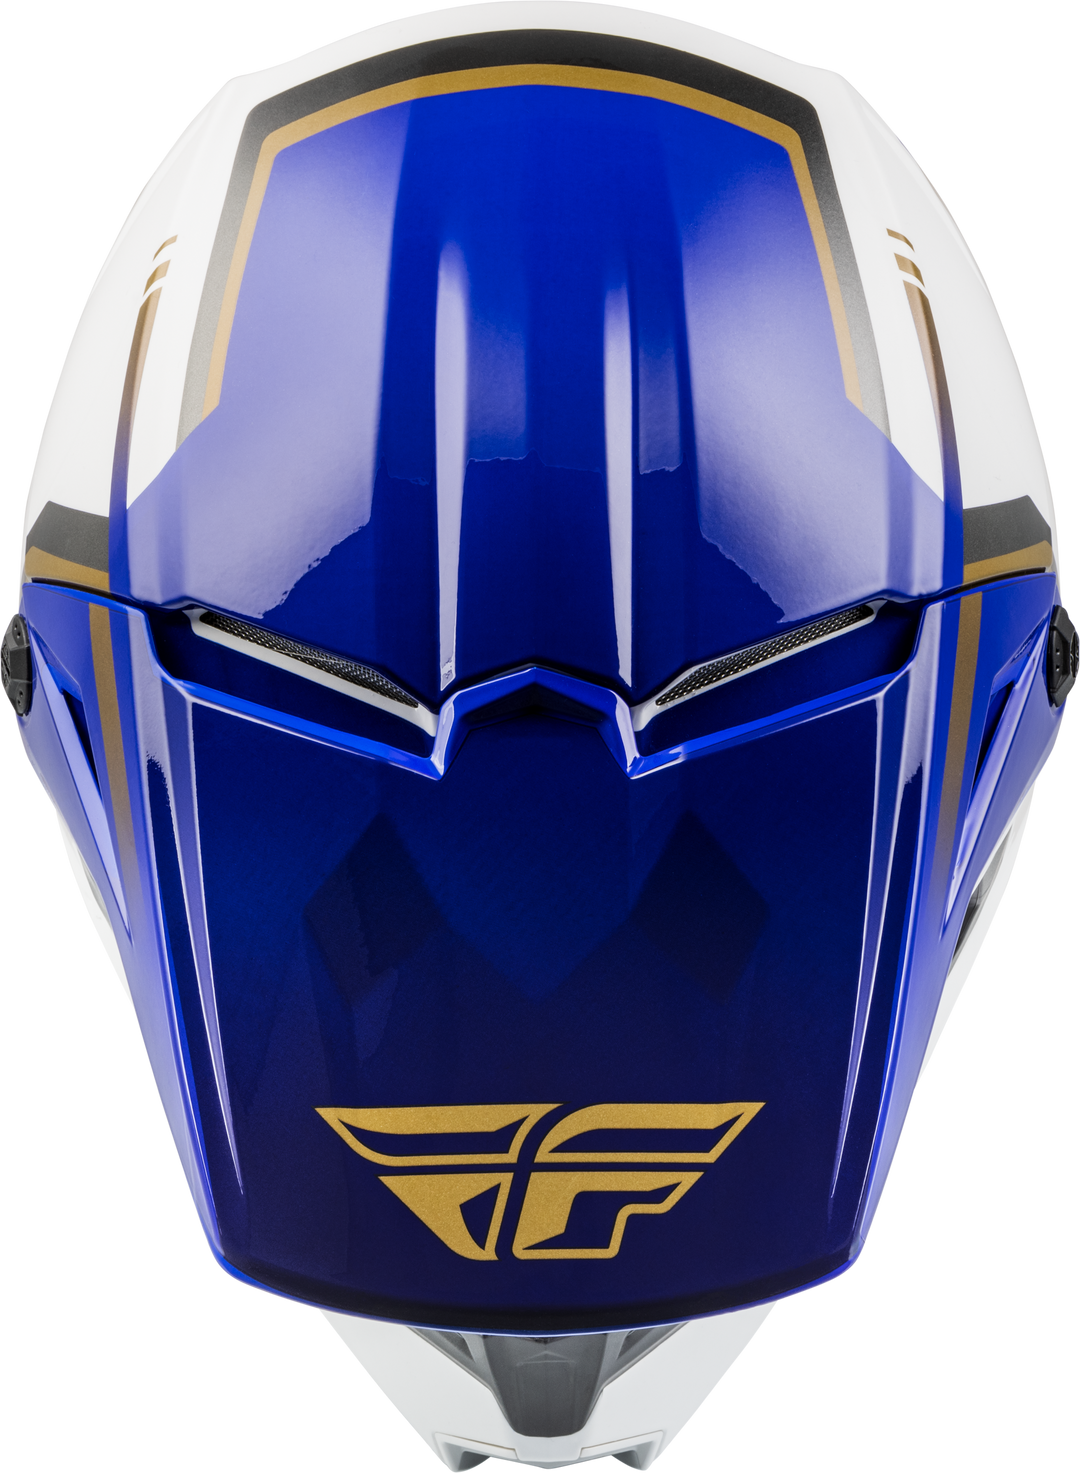 FLY Kinetic Vision Helmet